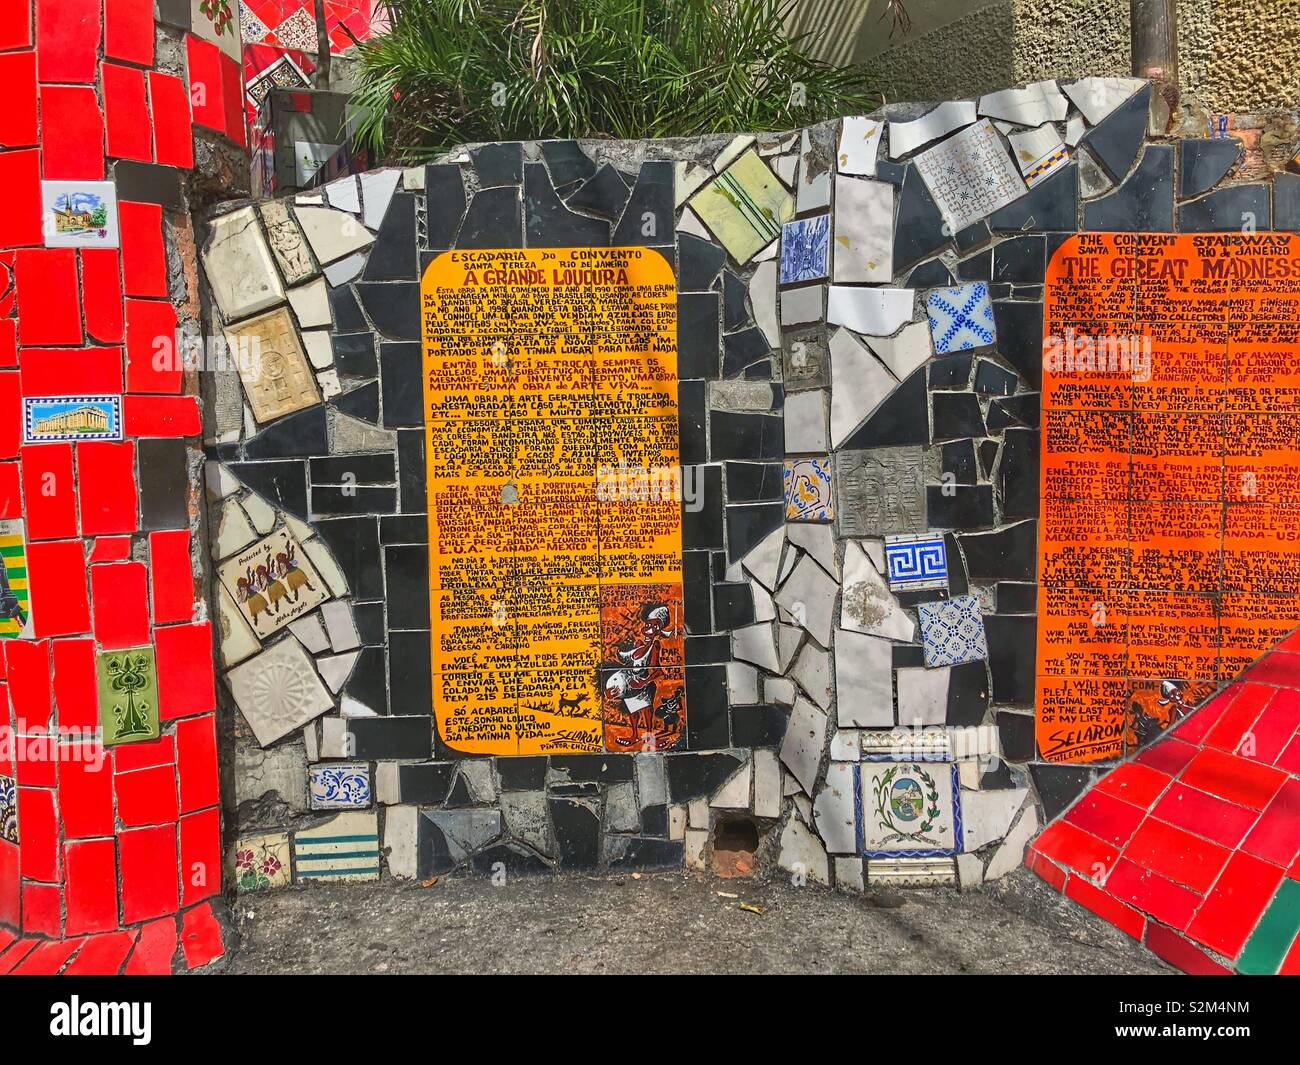 Escadaria Selarón, la spiegazione di questo mosaico capolavoro e attrazione a Rio de Janeiro in Brasile. Foto Stock